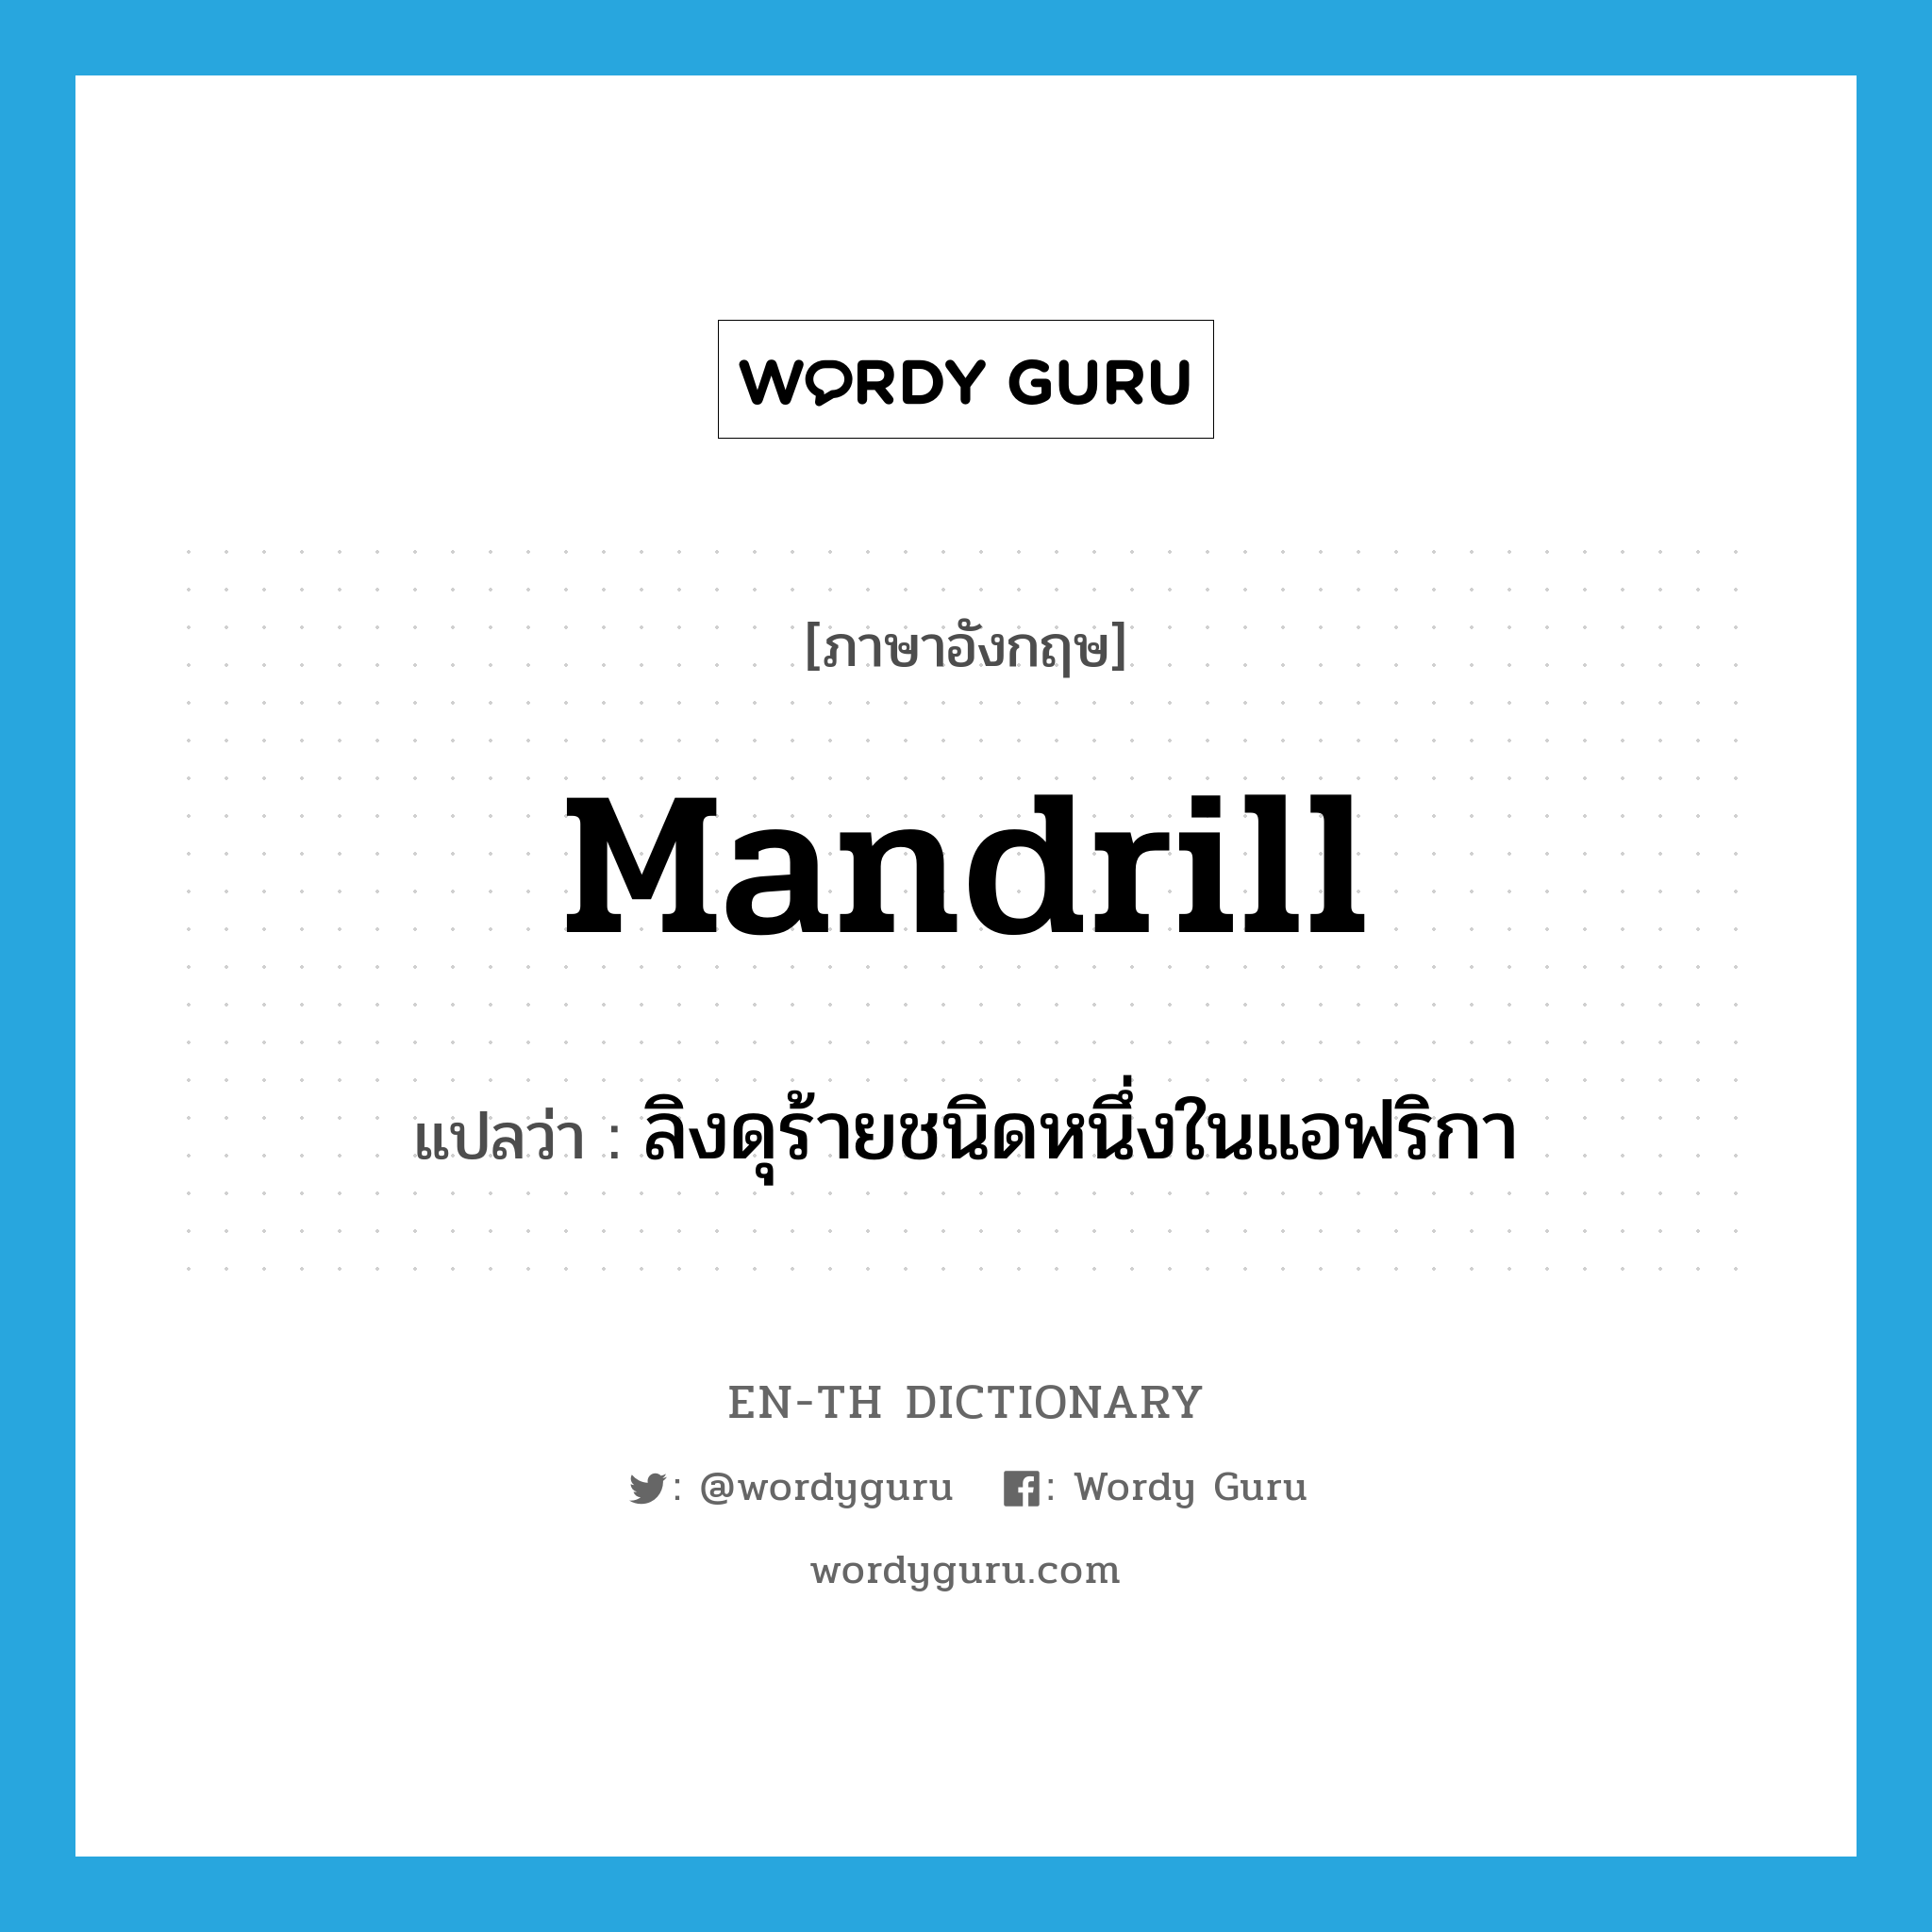 mandrill แปลว่า?, คำศัพท์ภาษาอังกฤษ mandrill แปลว่า ลิงดุร้ายชนิดหนึ่งในแอฟริกา ประเภท N หมวด N